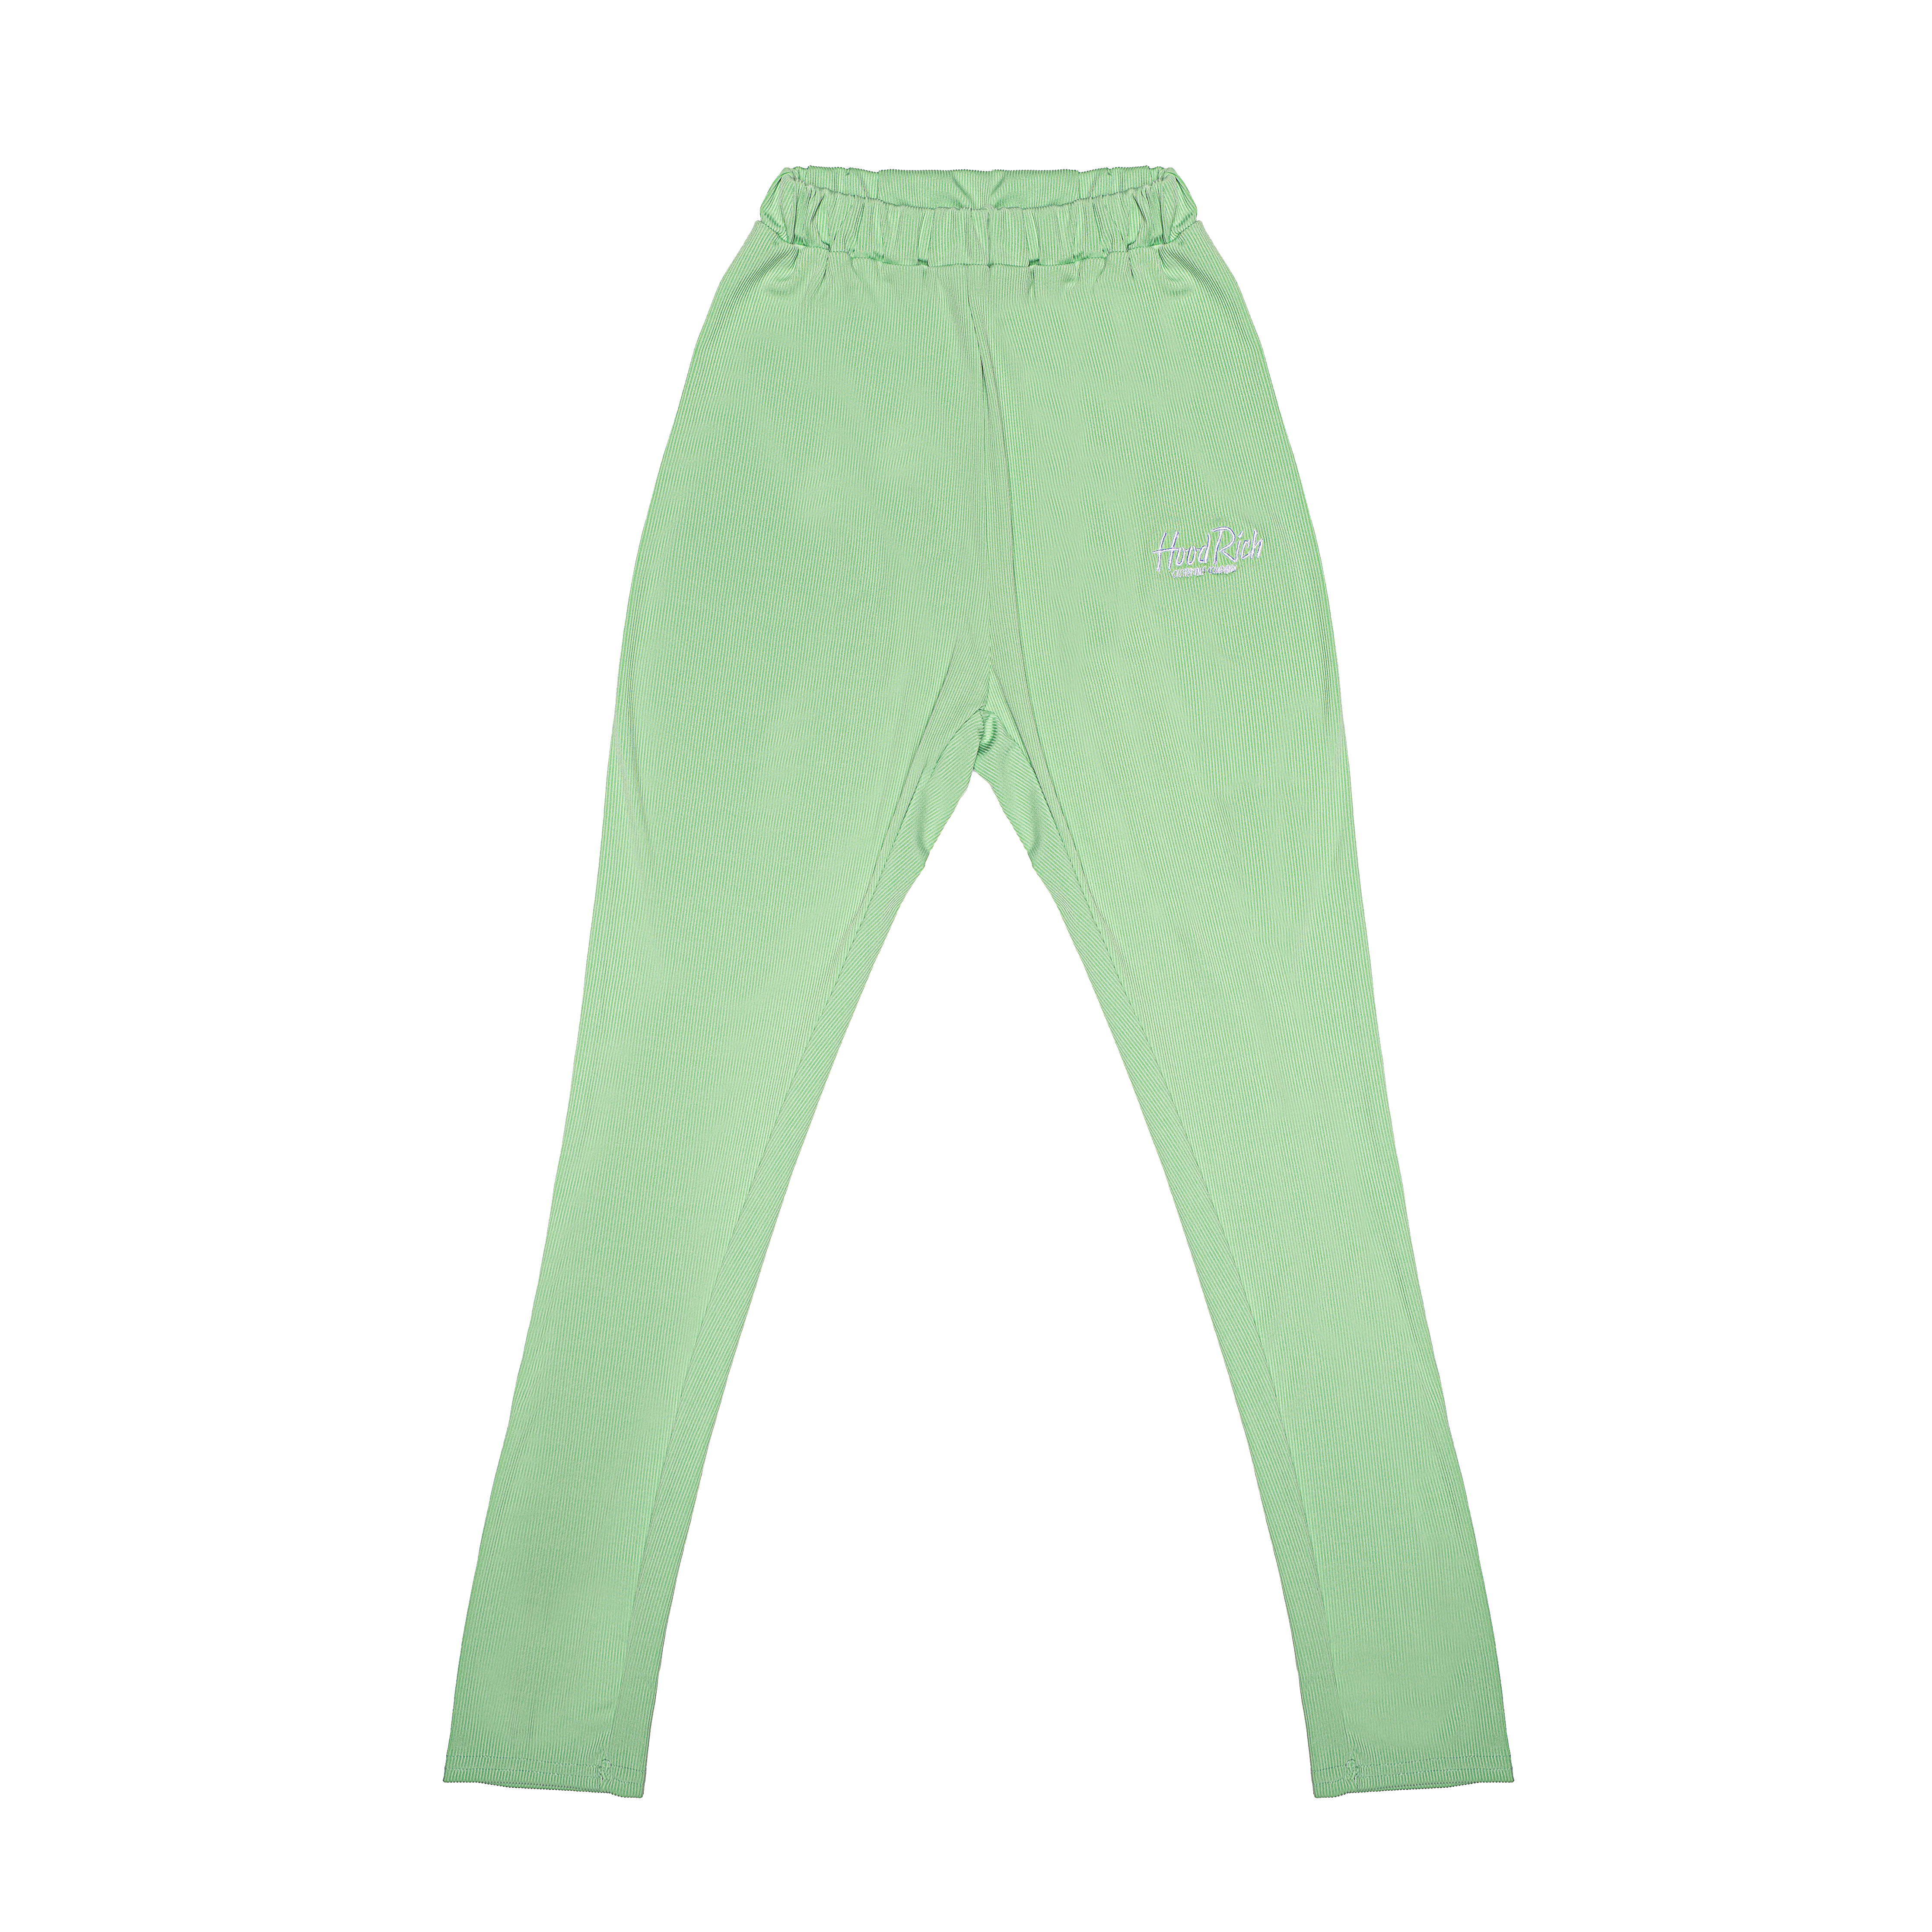 Green “Lucky” HoodRich Outfit